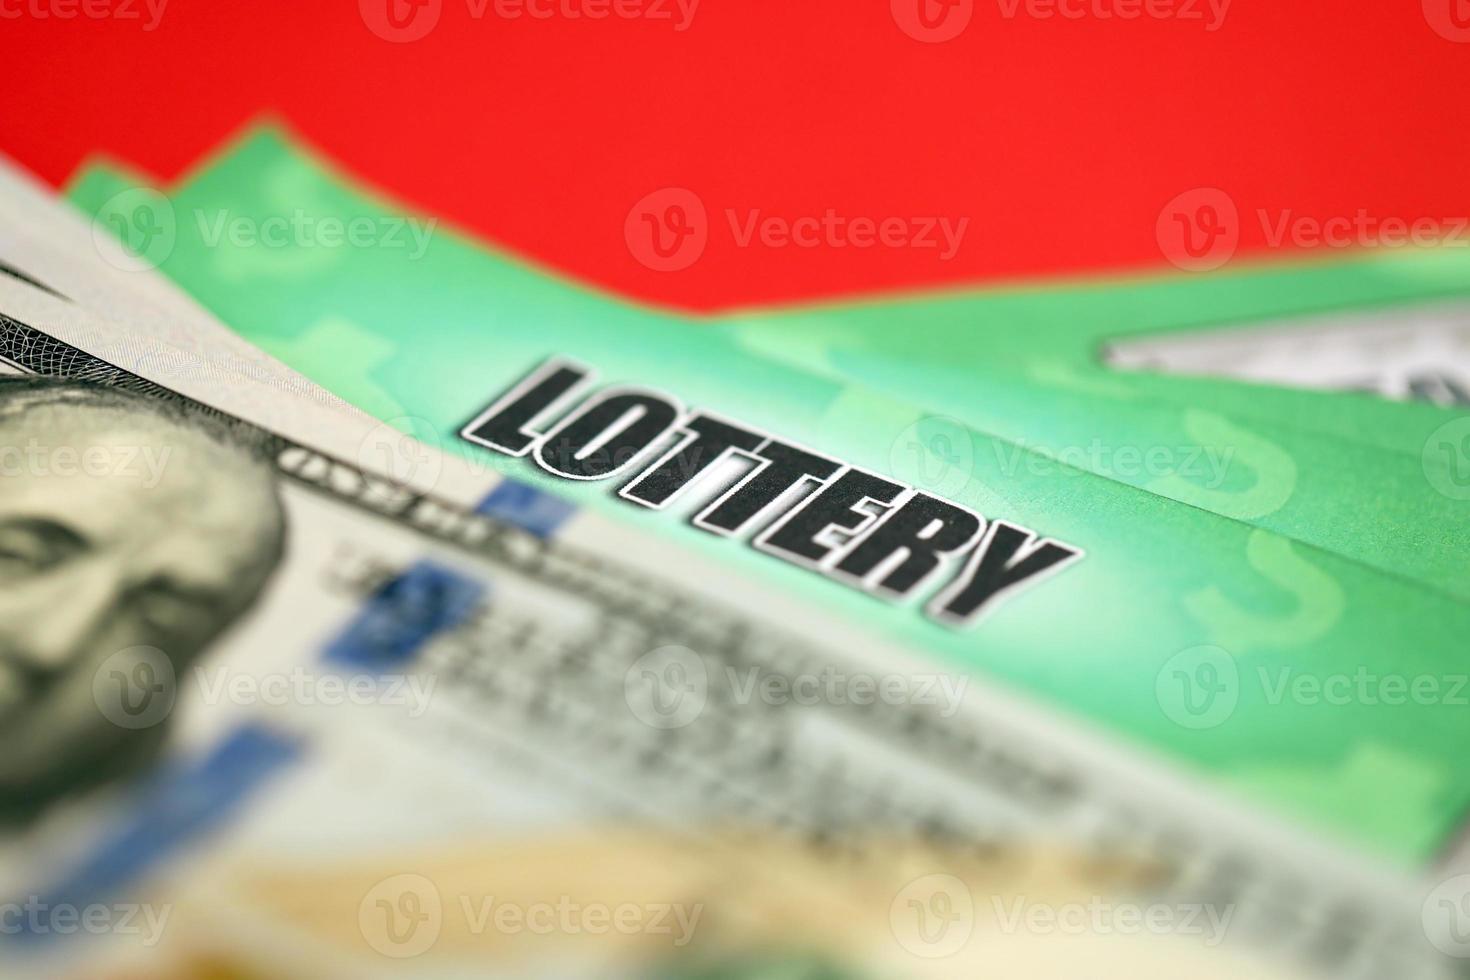 close-up vista de raspadinhas de loteria verde e notas de dólar dos eua. muitos usavam bilhetes de loteria instantâneos falsos com resultados de jogos de azar. vício em jogos de azar foto